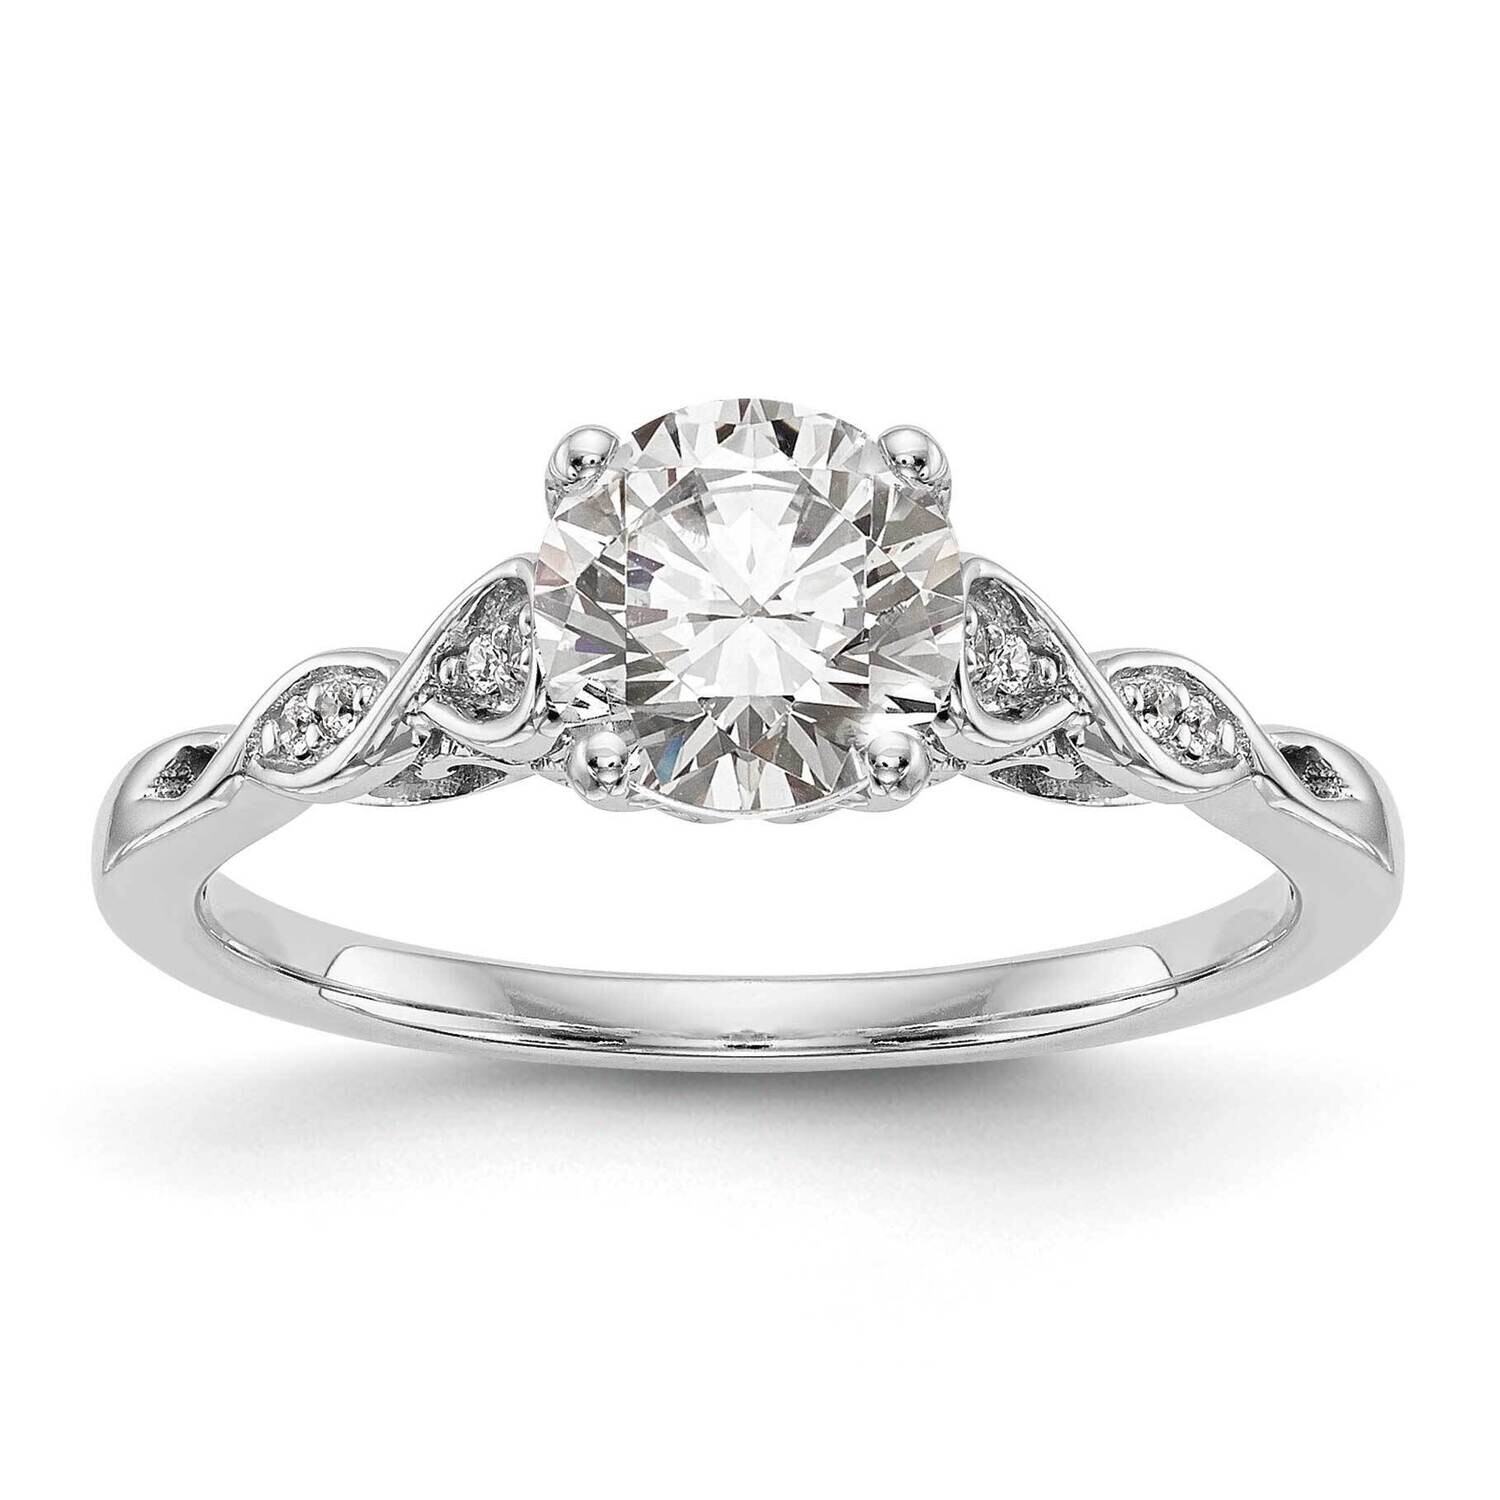 Peg Set .03 Carat Diamond Semi-Mount Engagement Ring 14k White Gold RM2890E-003-WAA